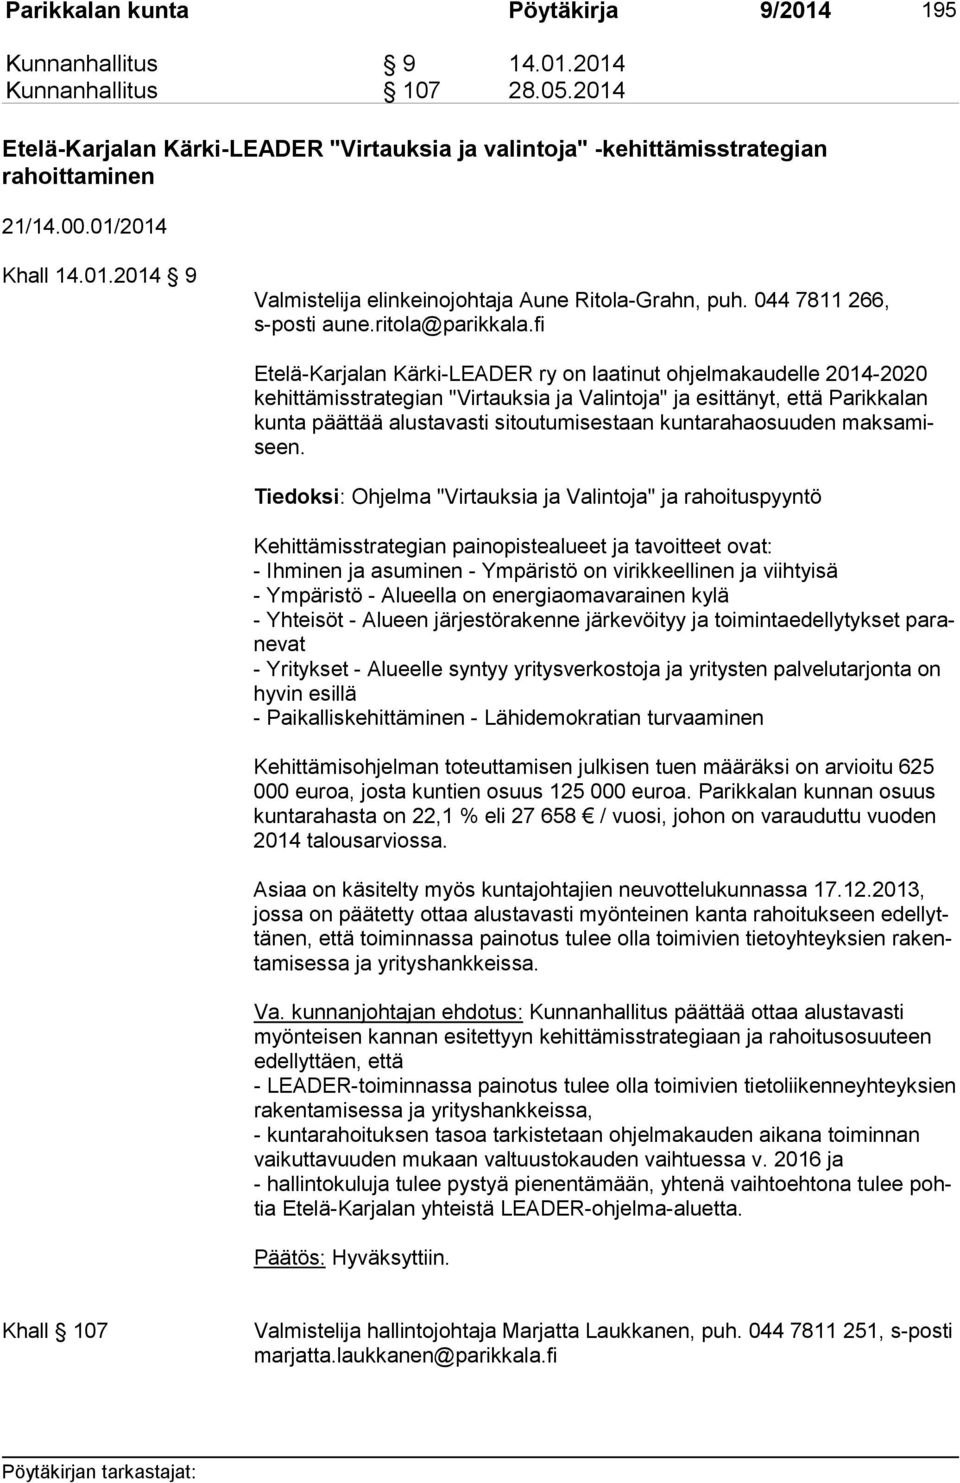 fi Etelä-Karjalan Kärki-LEADER ry on laatinut ohjelmakaudelle 2014-2020 ke hit tä mis stra te gian "Virtauksia ja Valintoja" ja esittänyt, että Parikkalan kun ta päättää alustavasti sitoutumisestaan